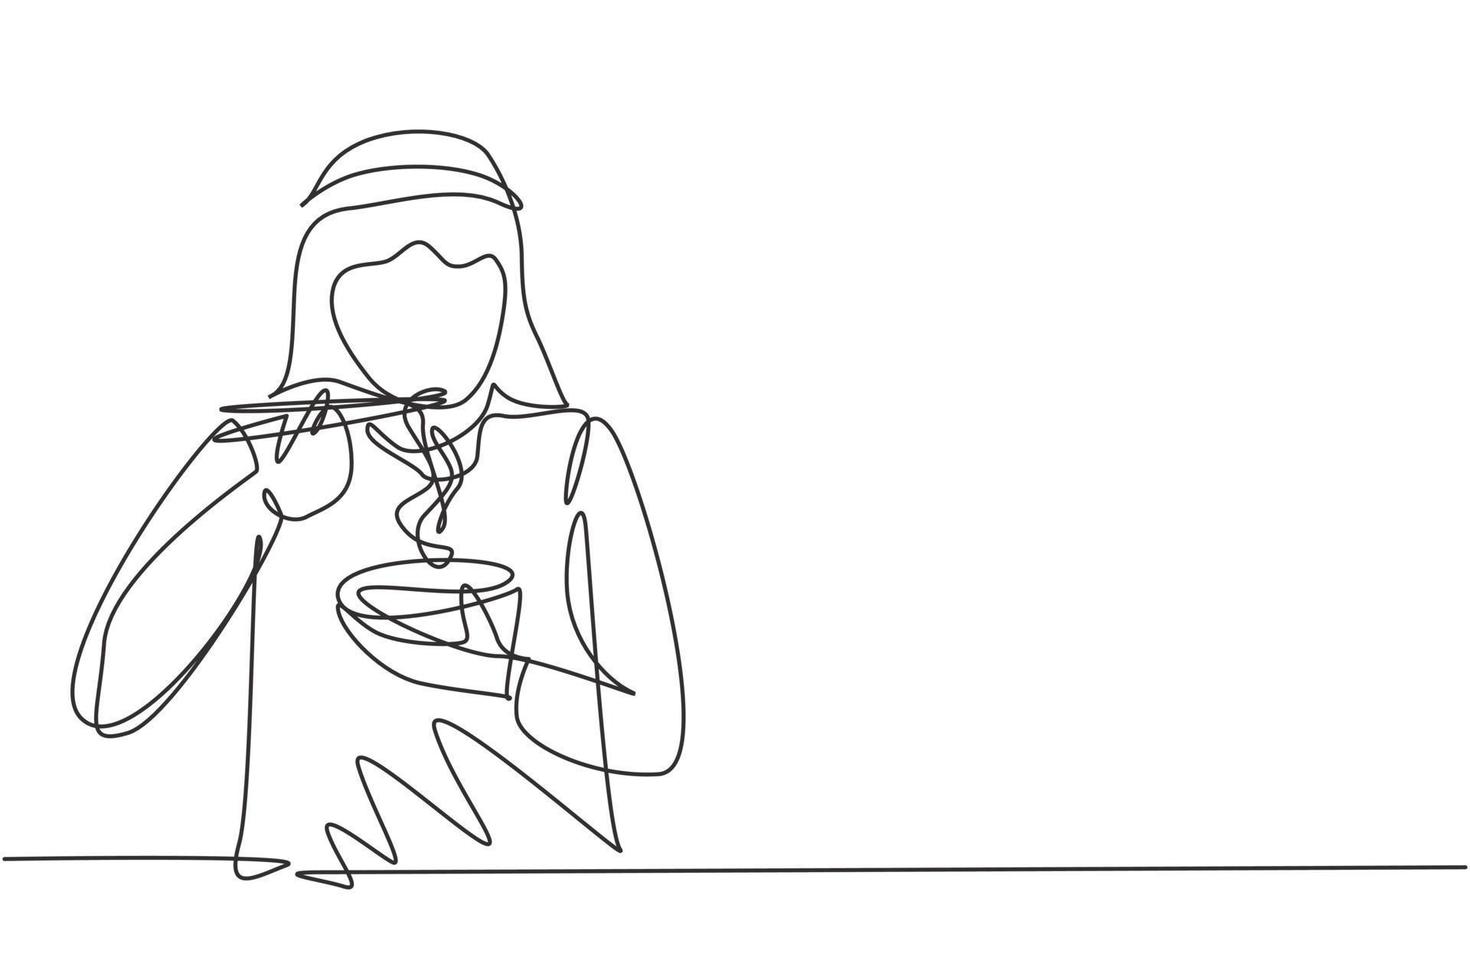 kontinuerlig en rad ritning ung arabisk man med nudlar måltid med ätpinnar runt bordet. njut av lunch när du är hungrig. utsökt och hälsosam mat. enda rad rita design vektorgrafisk illustration vektor